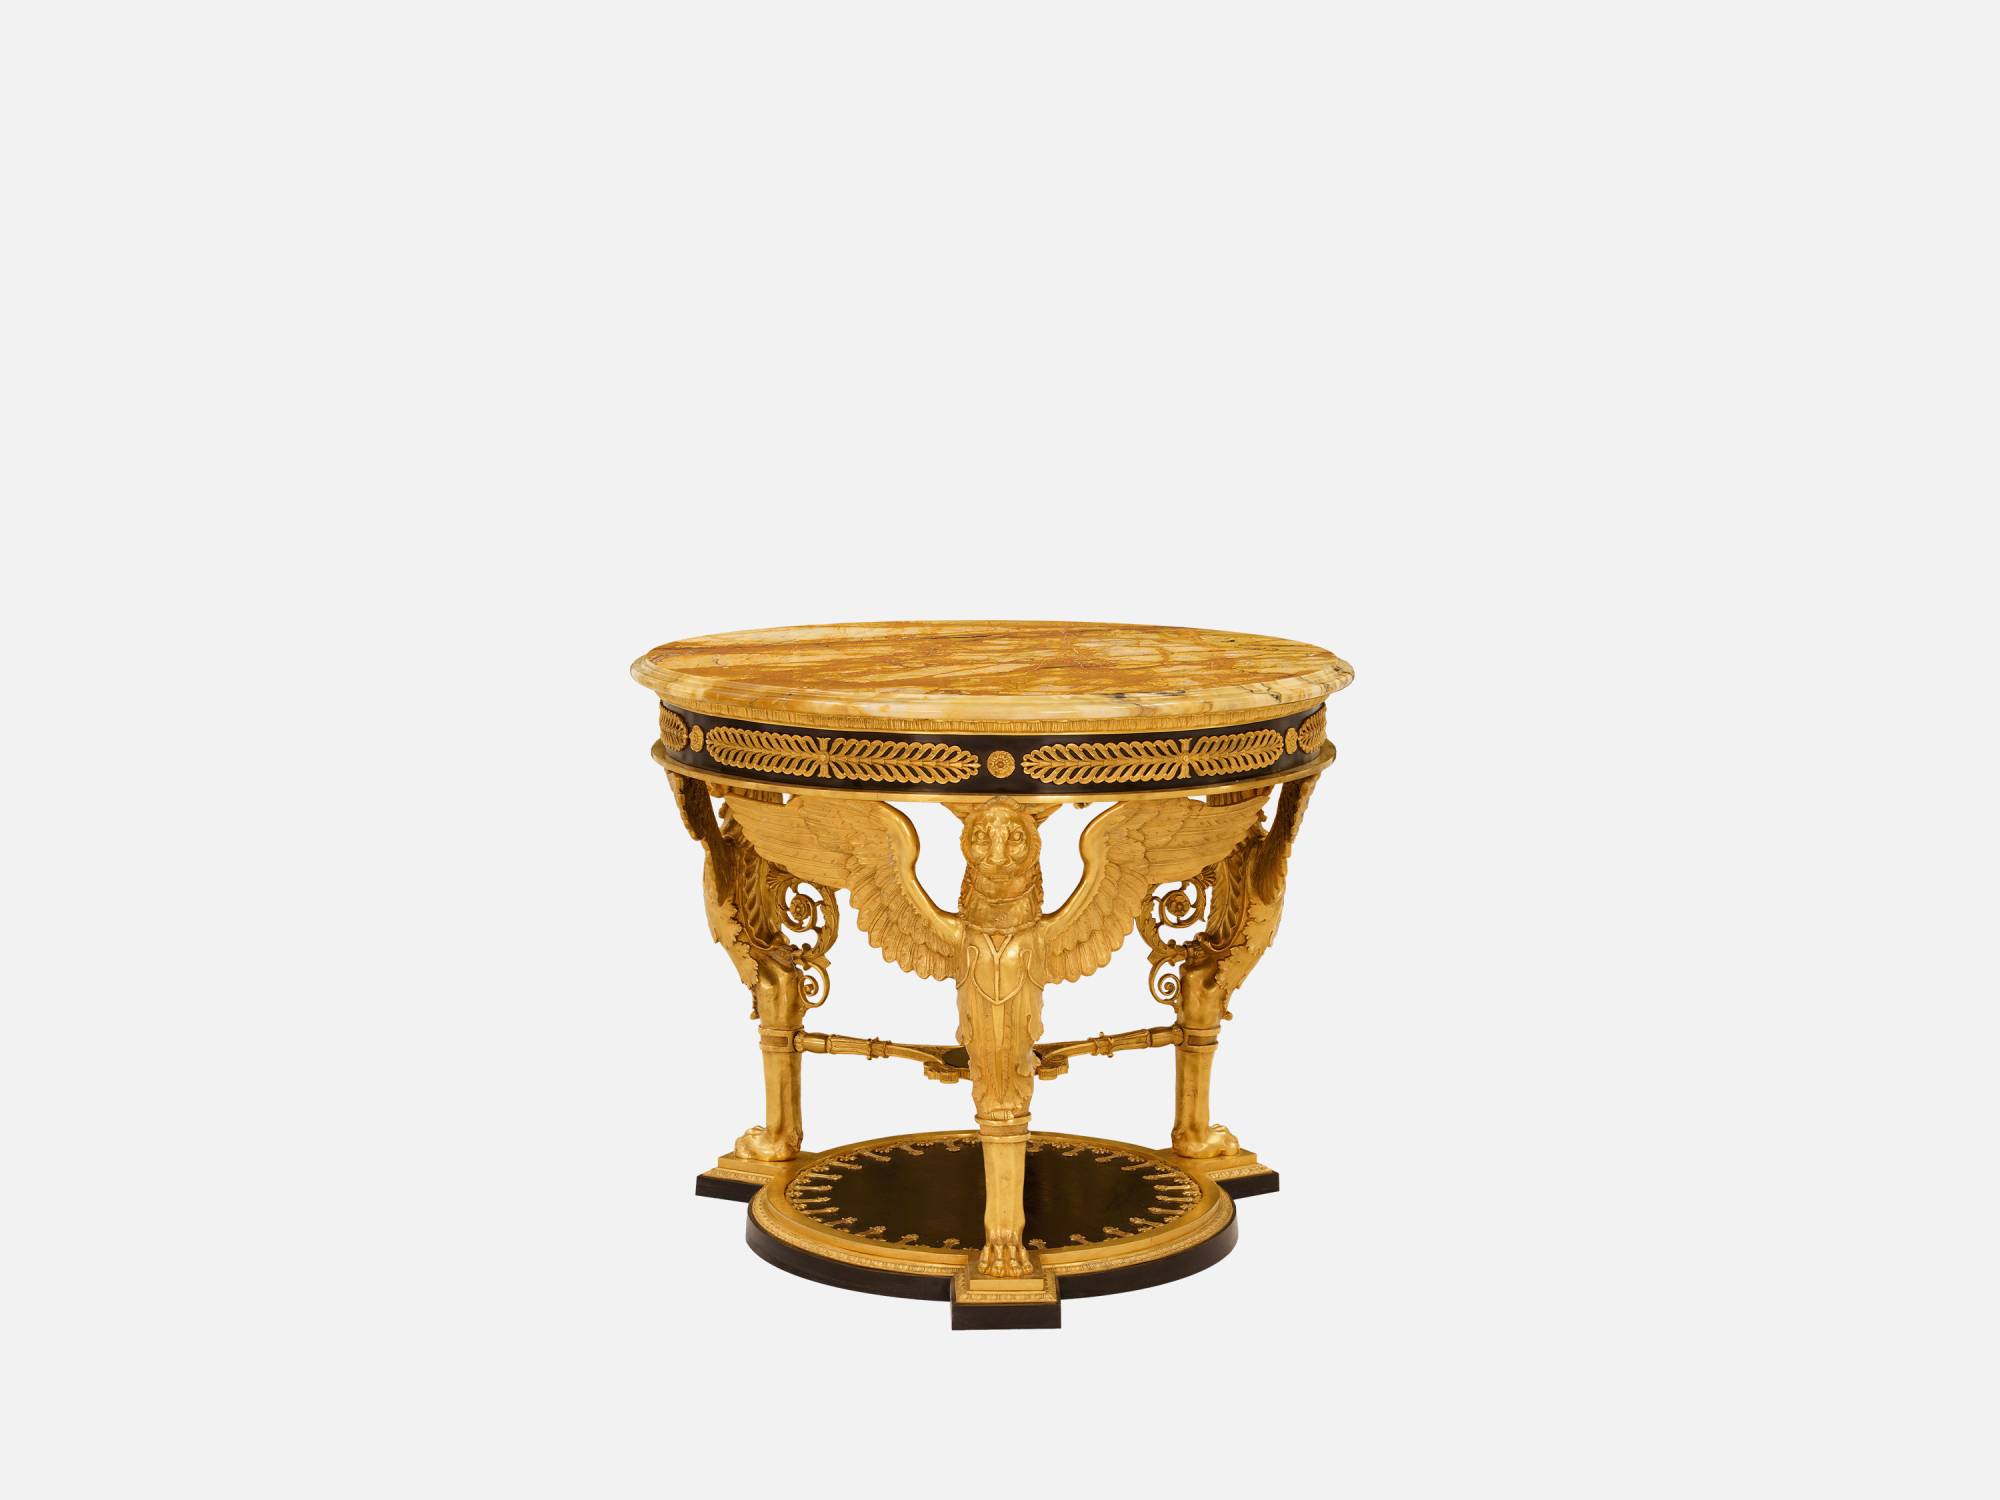 ART. 2182 – C.G. Capelletti Italian Luxury Classic Small tables. Made in Italy classic interior design